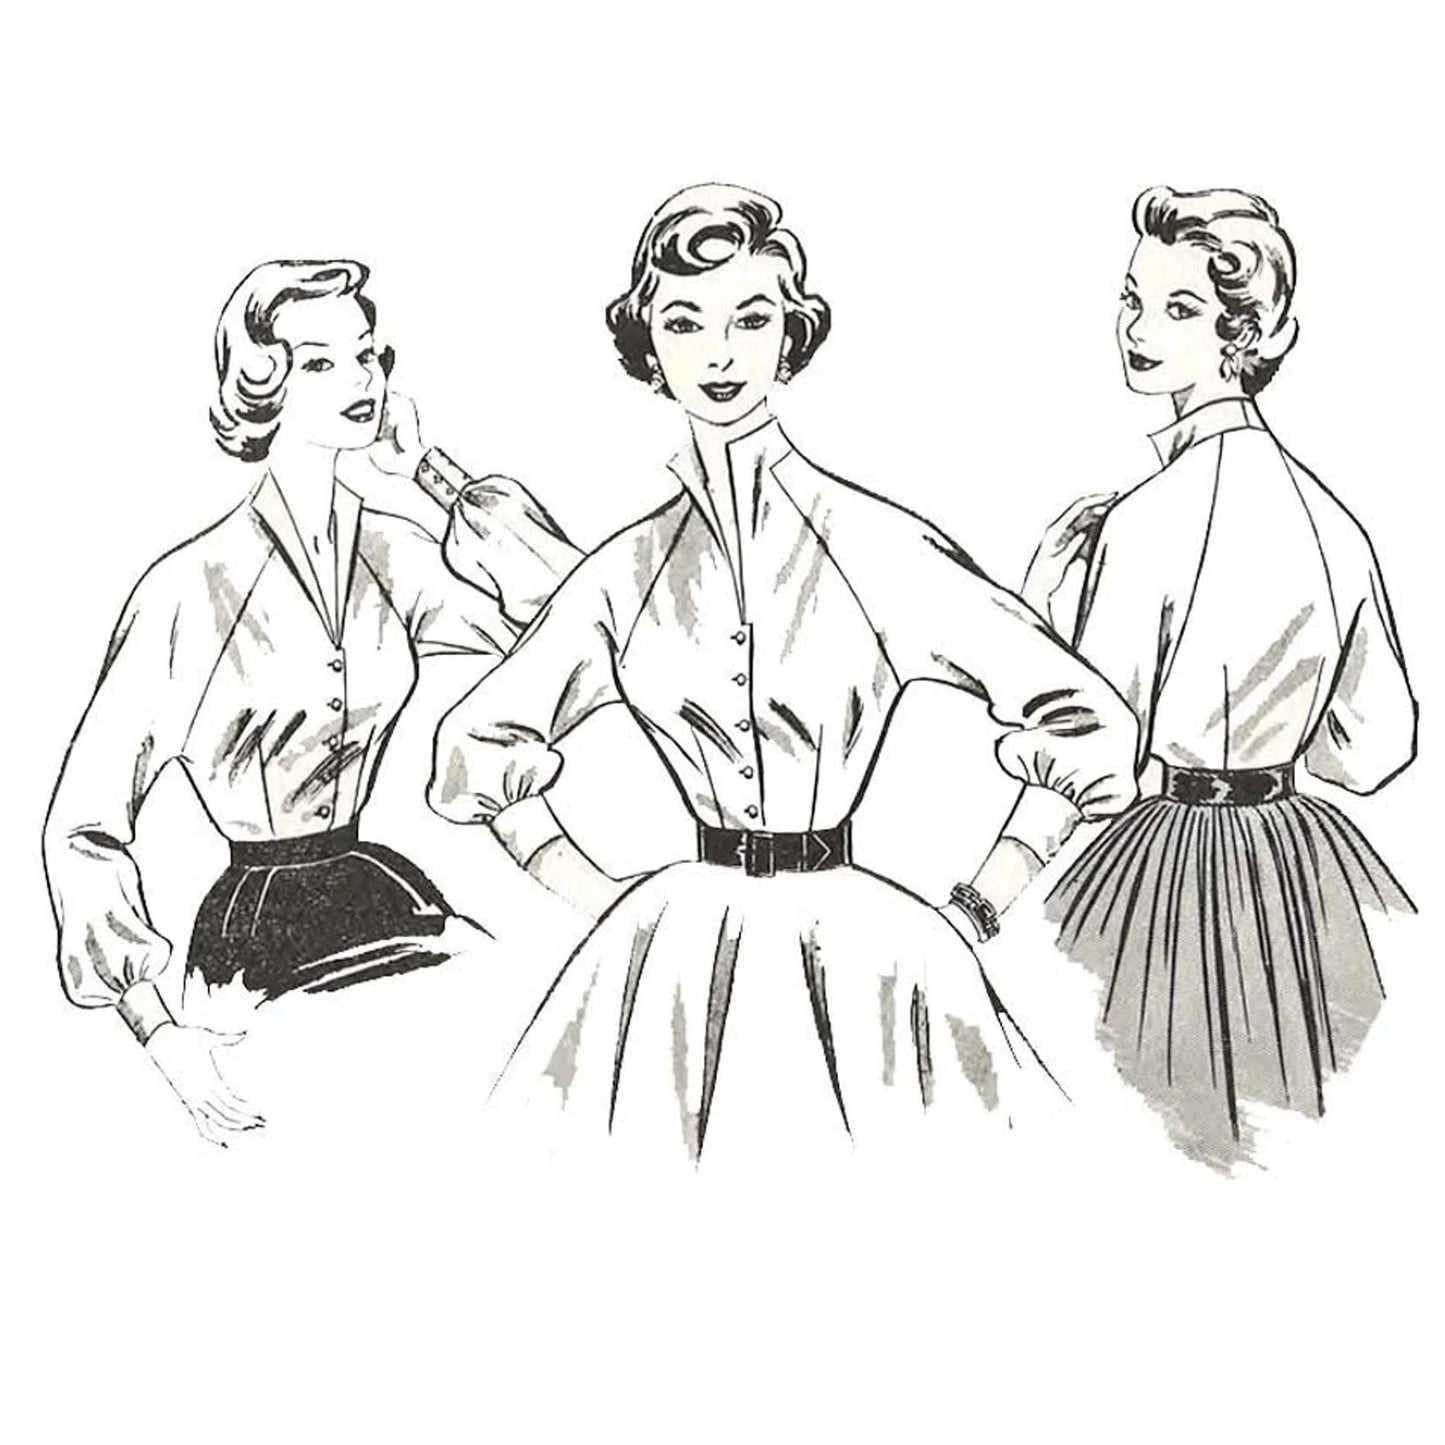 Women wearing blouses